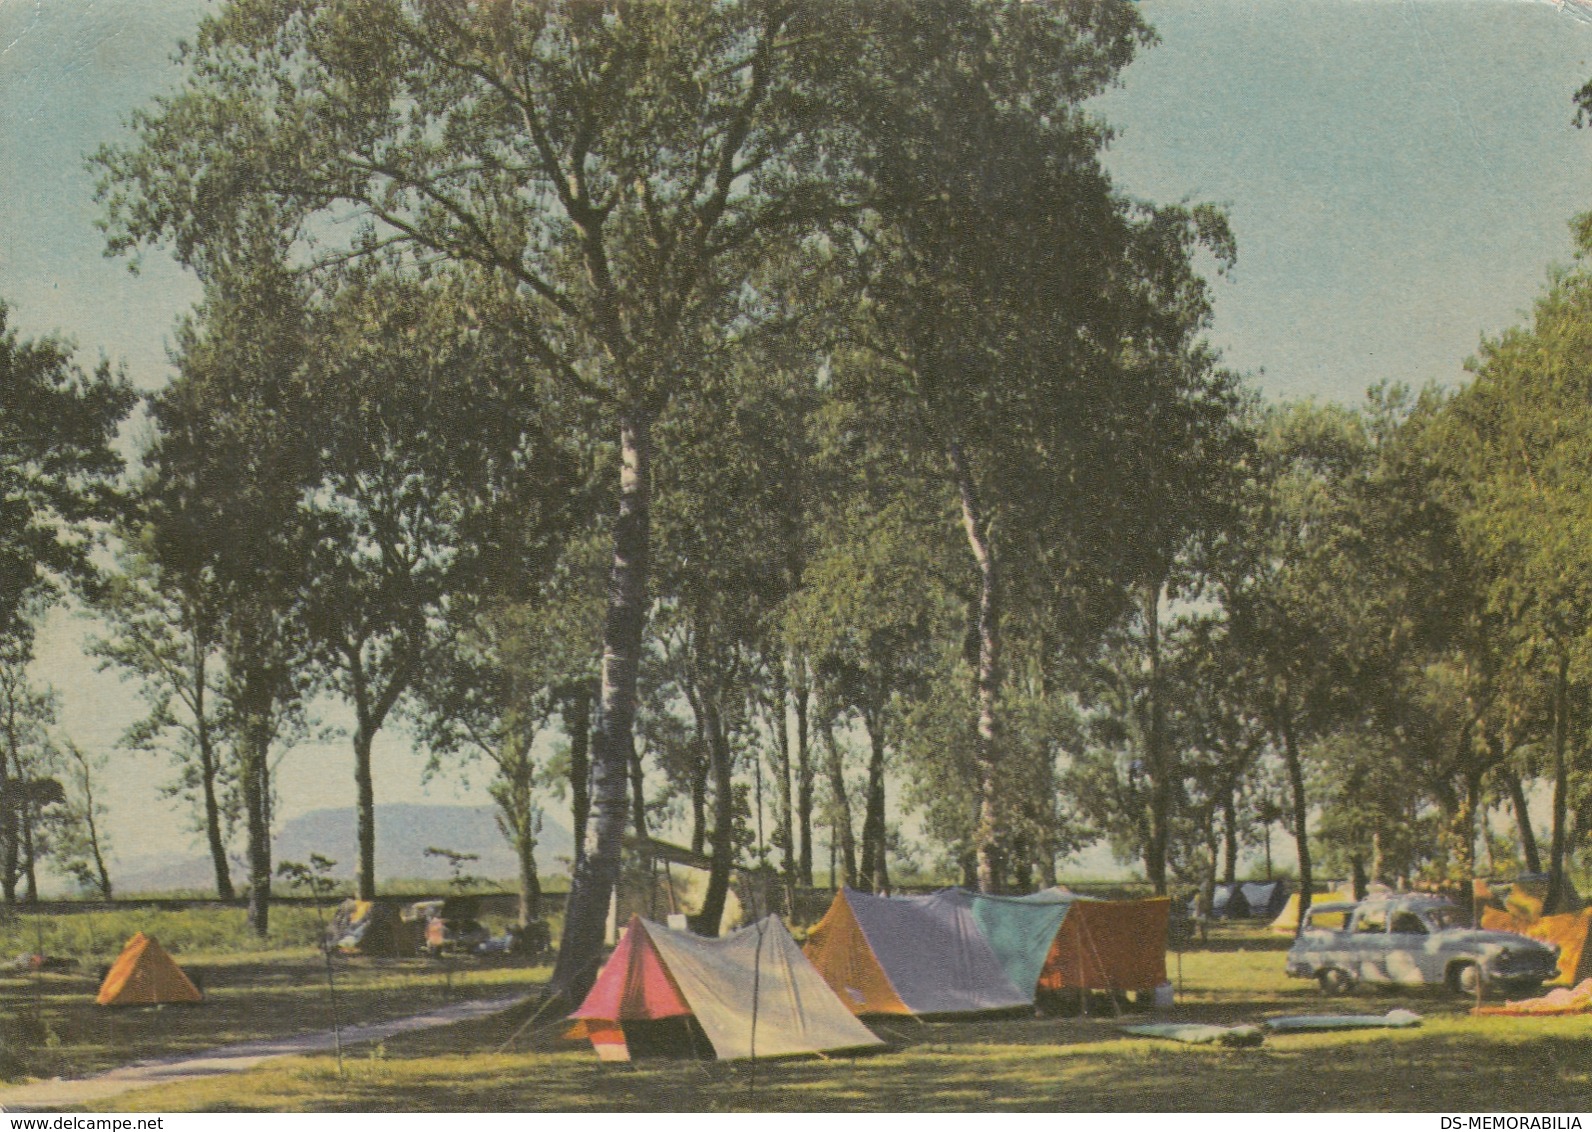 Balaton - Camping 1966 - Hungary